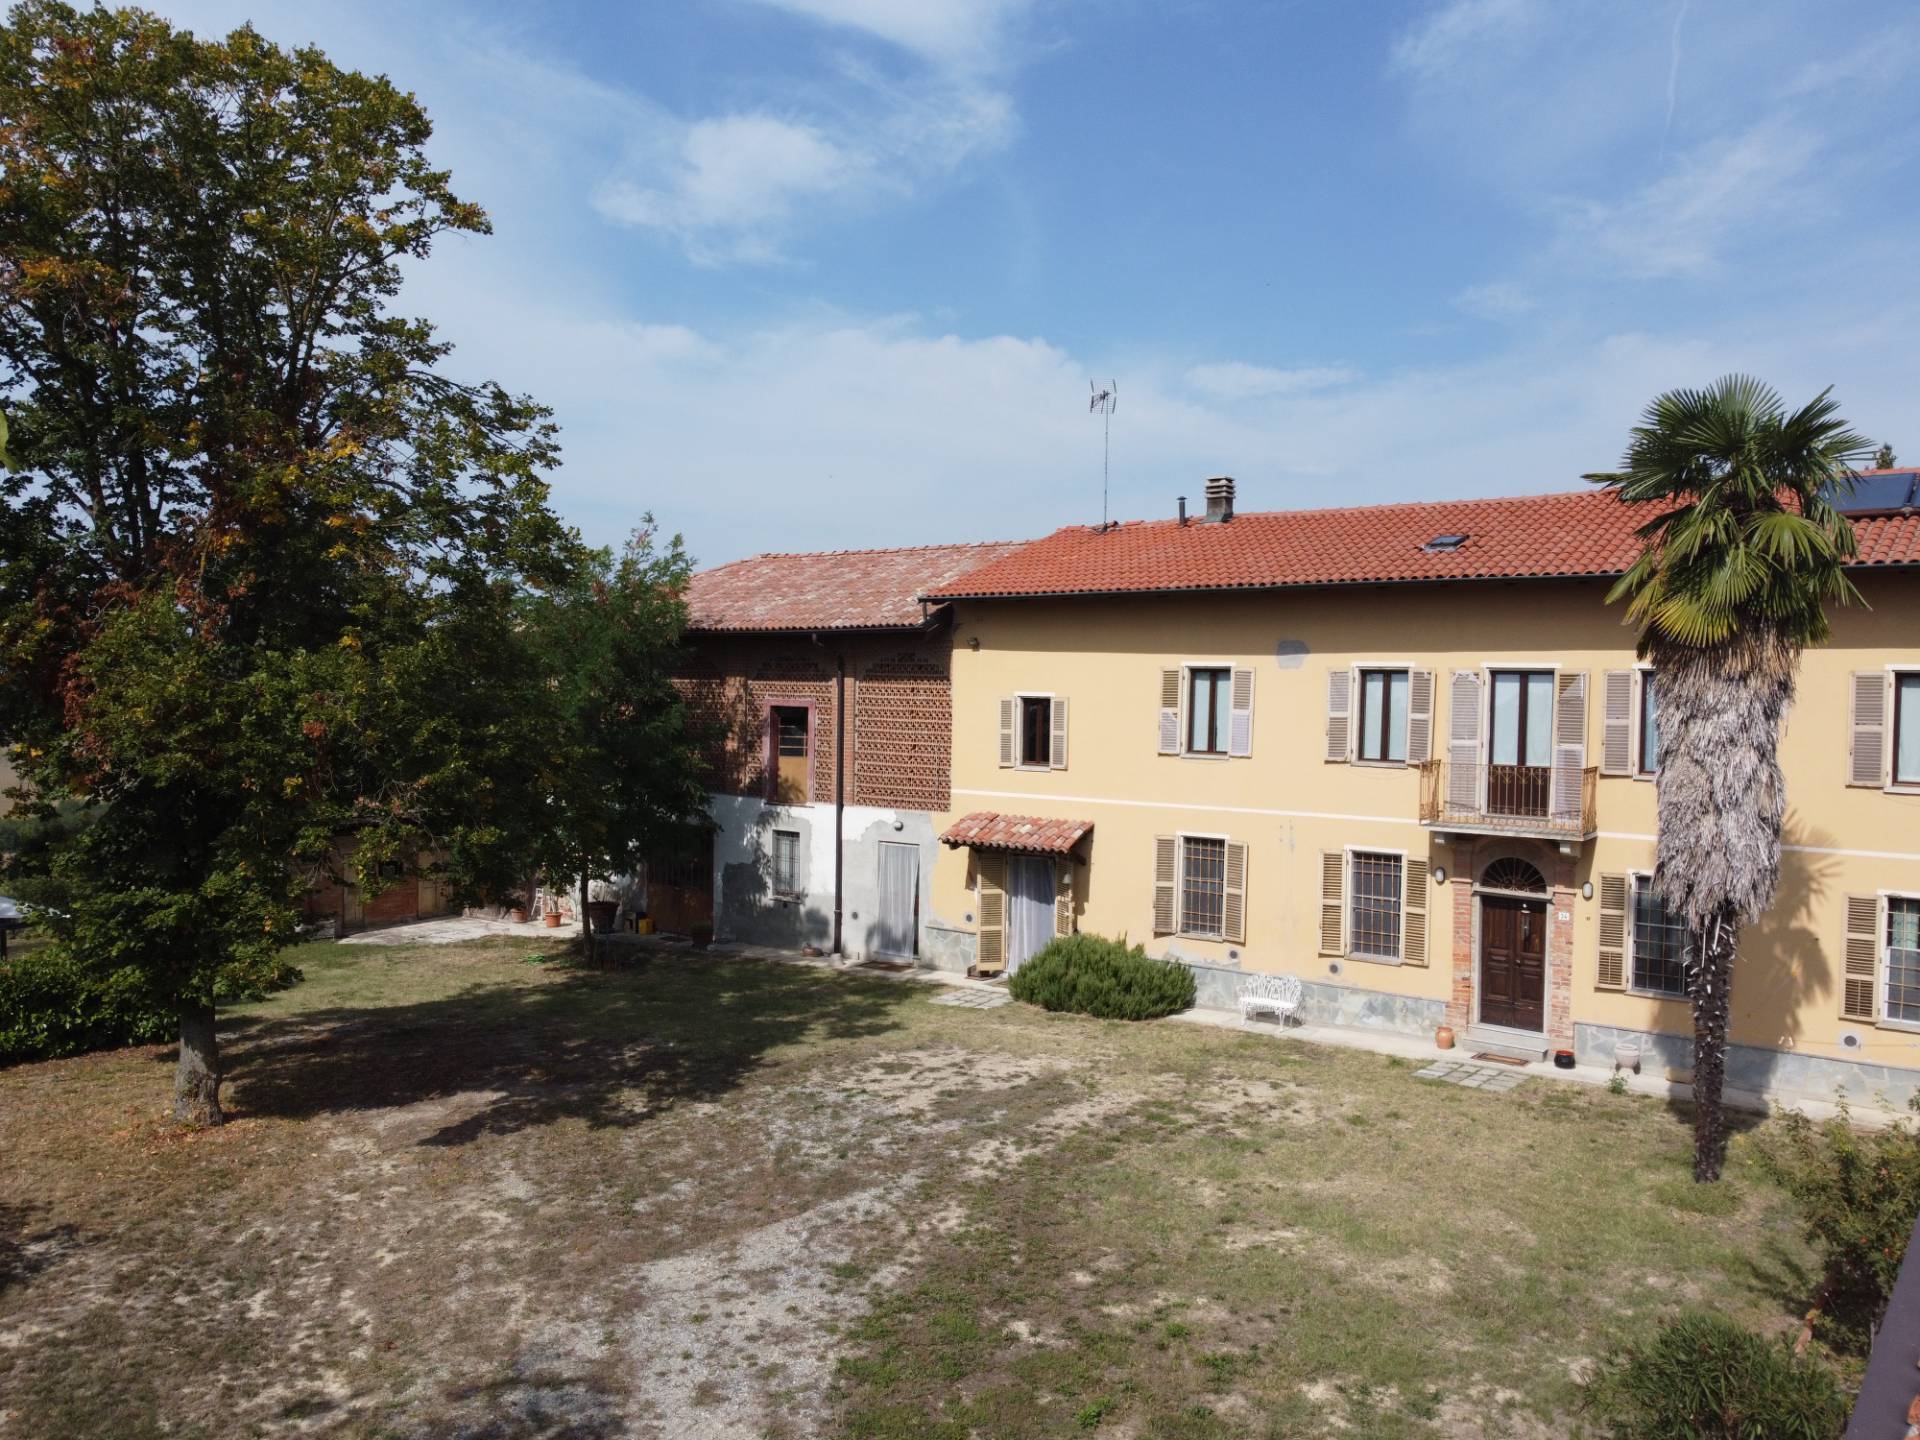 Rustico / Casale in vendita a Moncalvo, 15 locali, prezzo € 350.000 | PortaleAgenzieImmobiliari.it